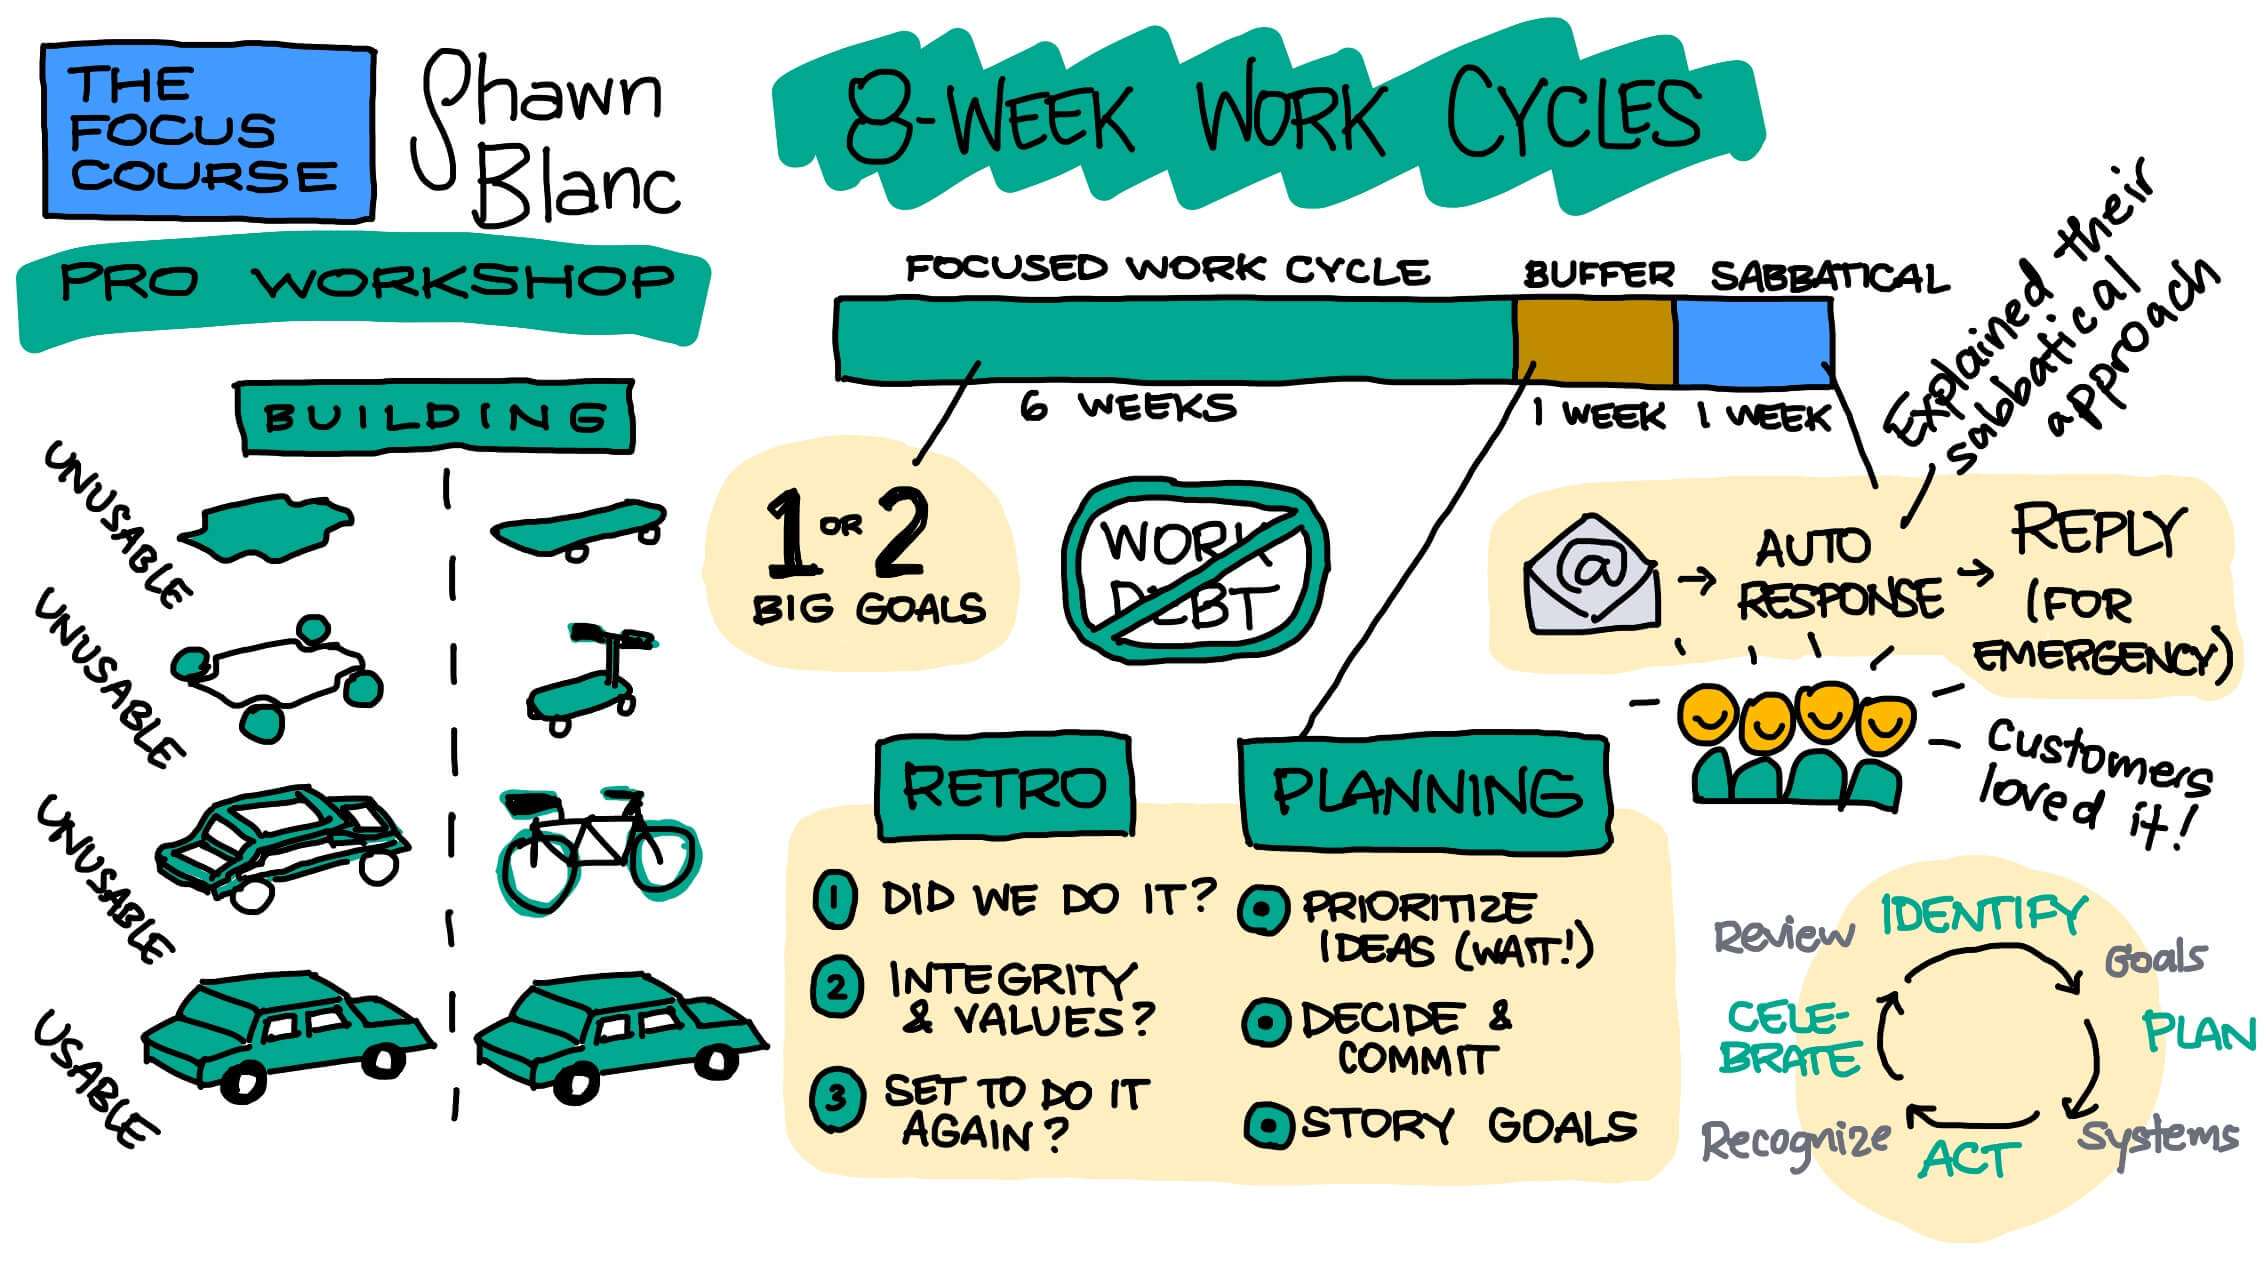 8 week work cycles 2